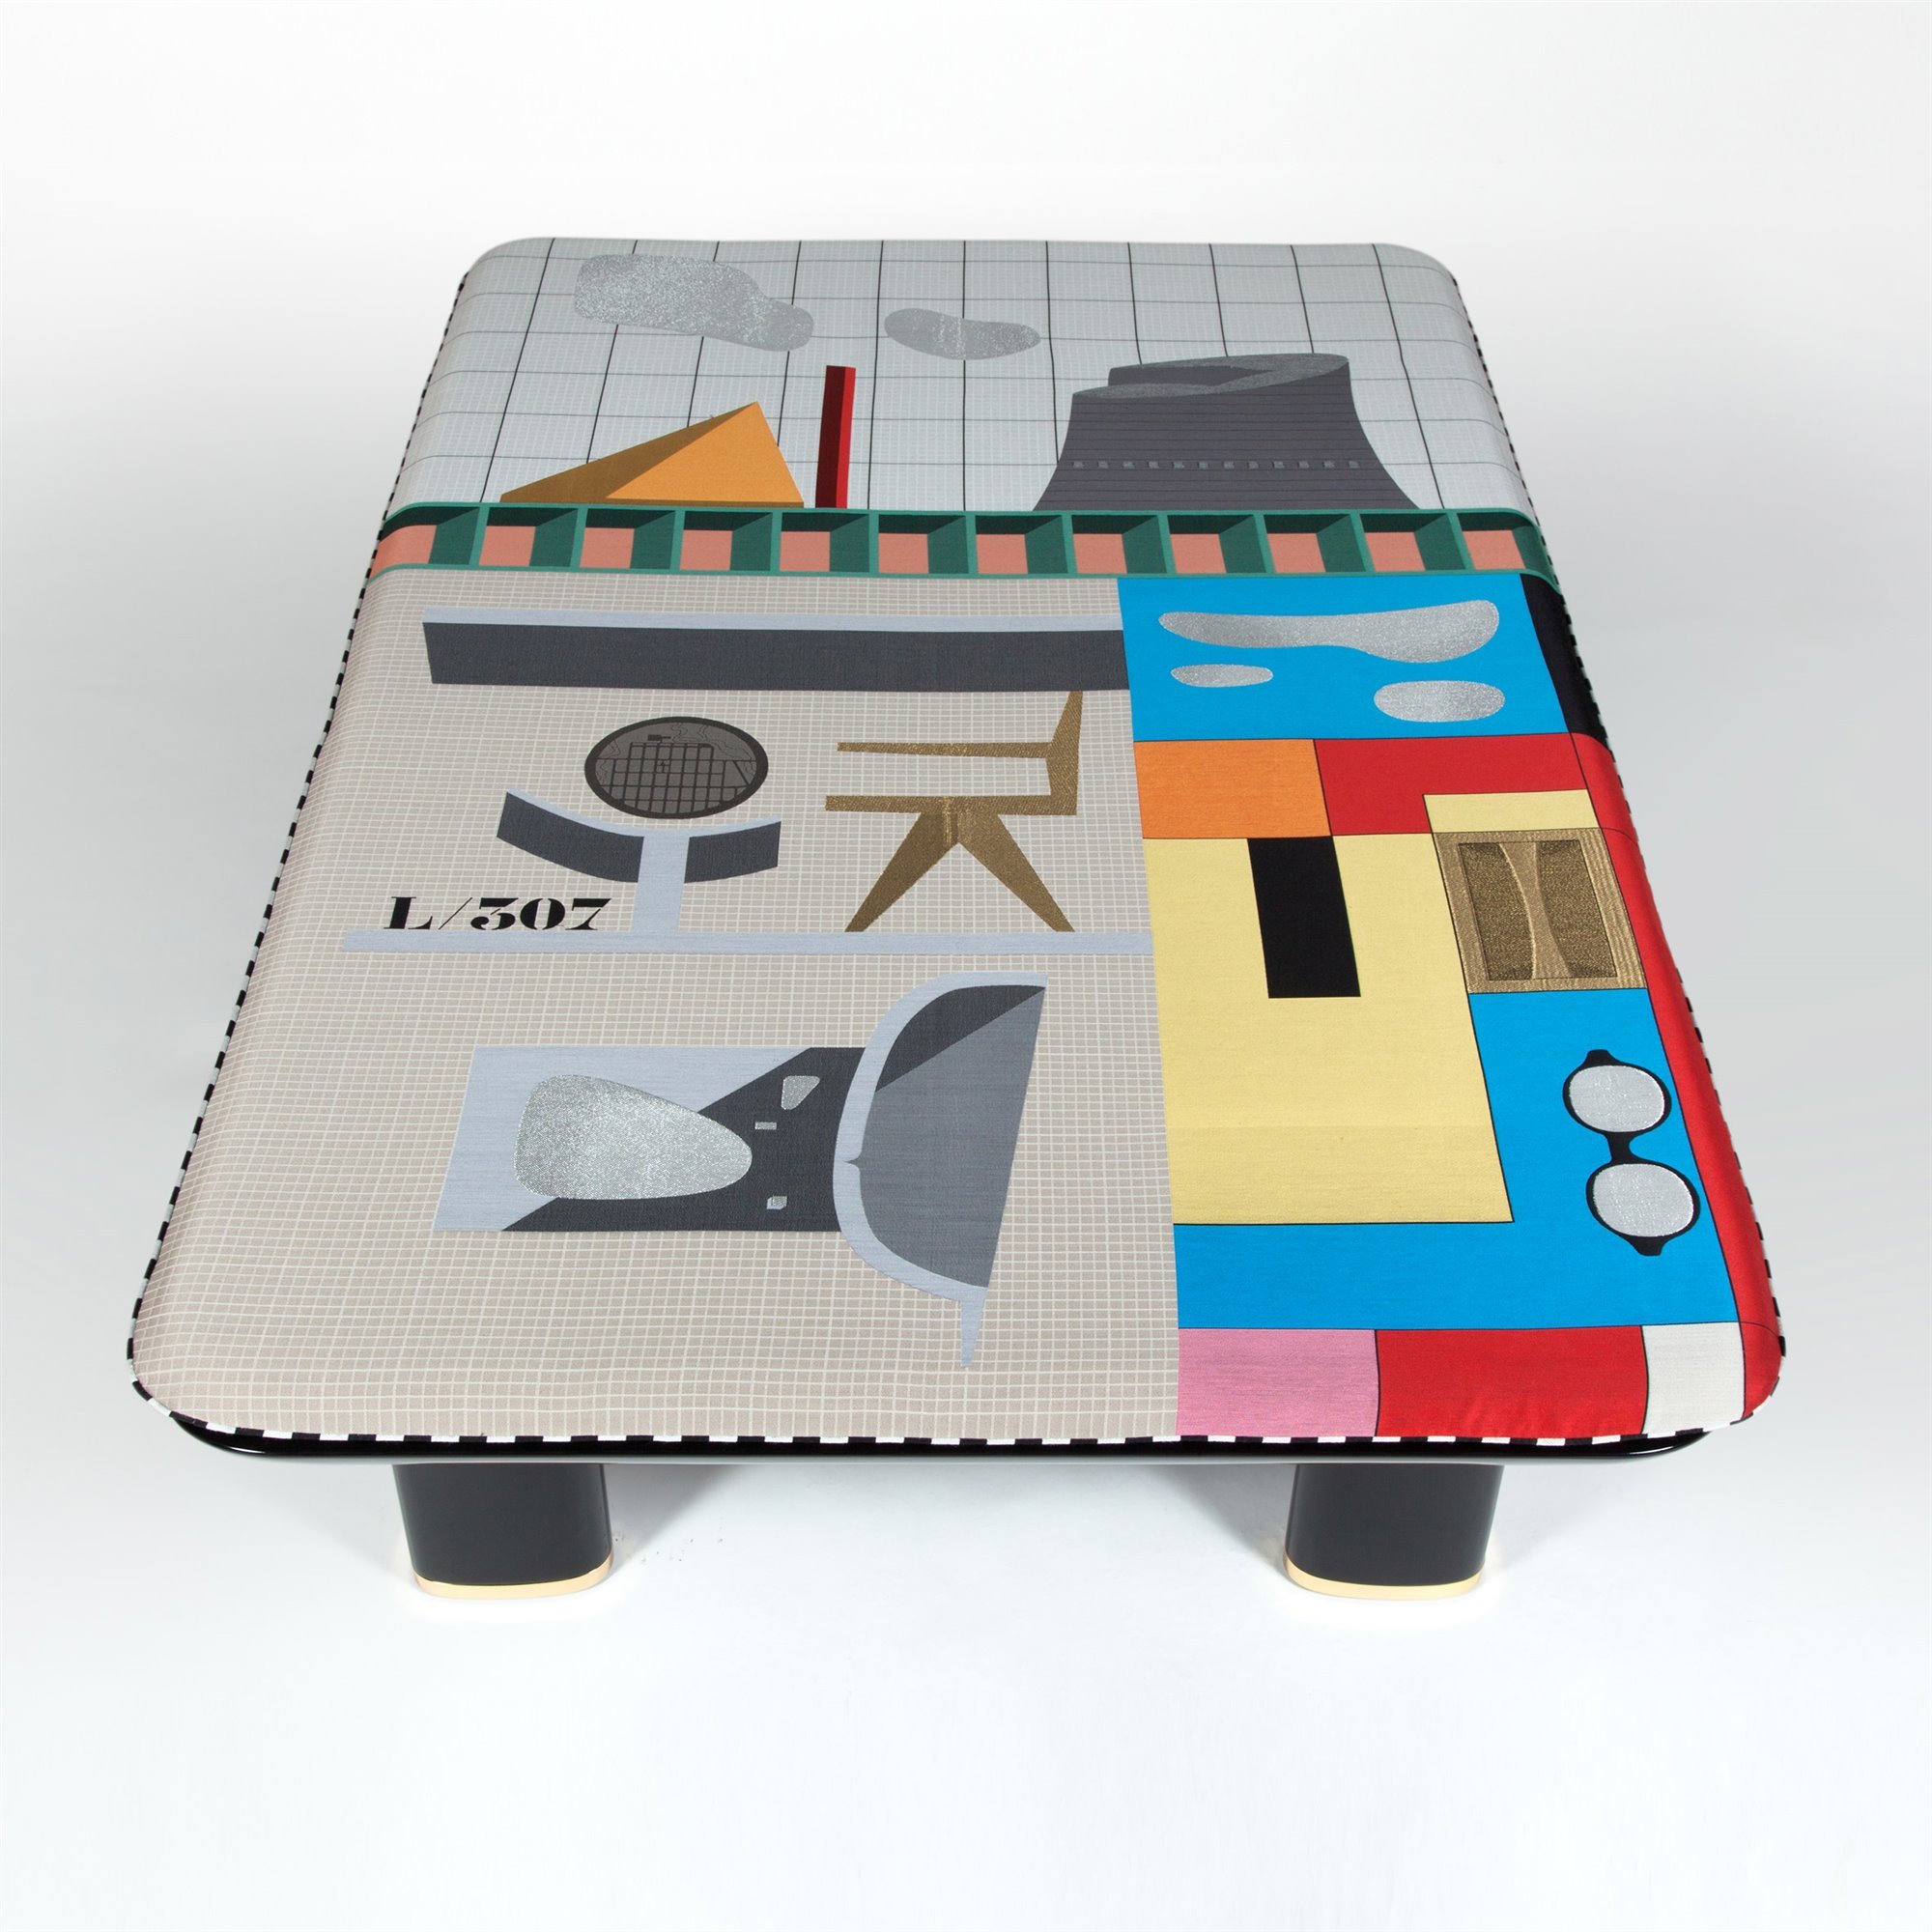 Mesa inspirada en Le Corbusier creada para la Galeria Kreo por Doshi Levien